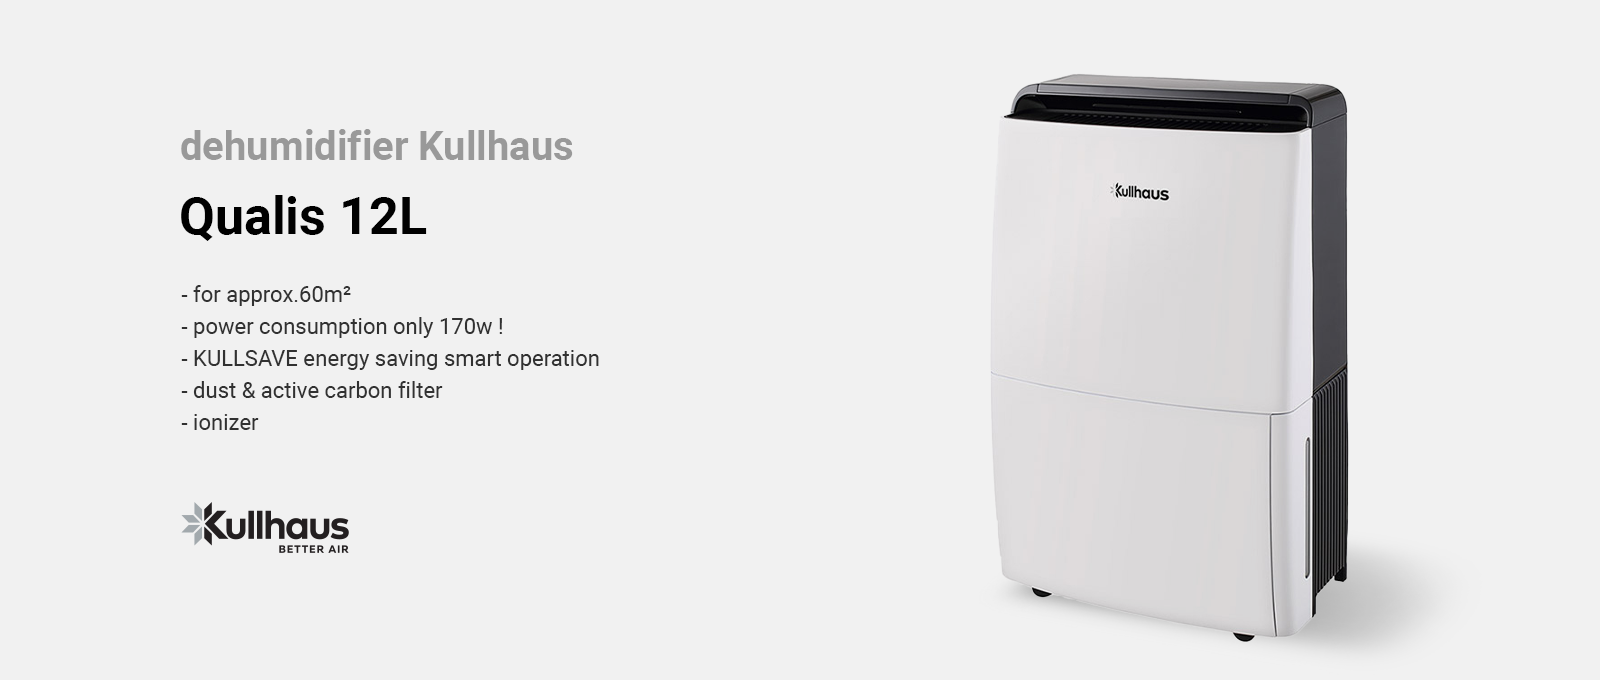 Kullhaus Qualis 12L dehumidifier